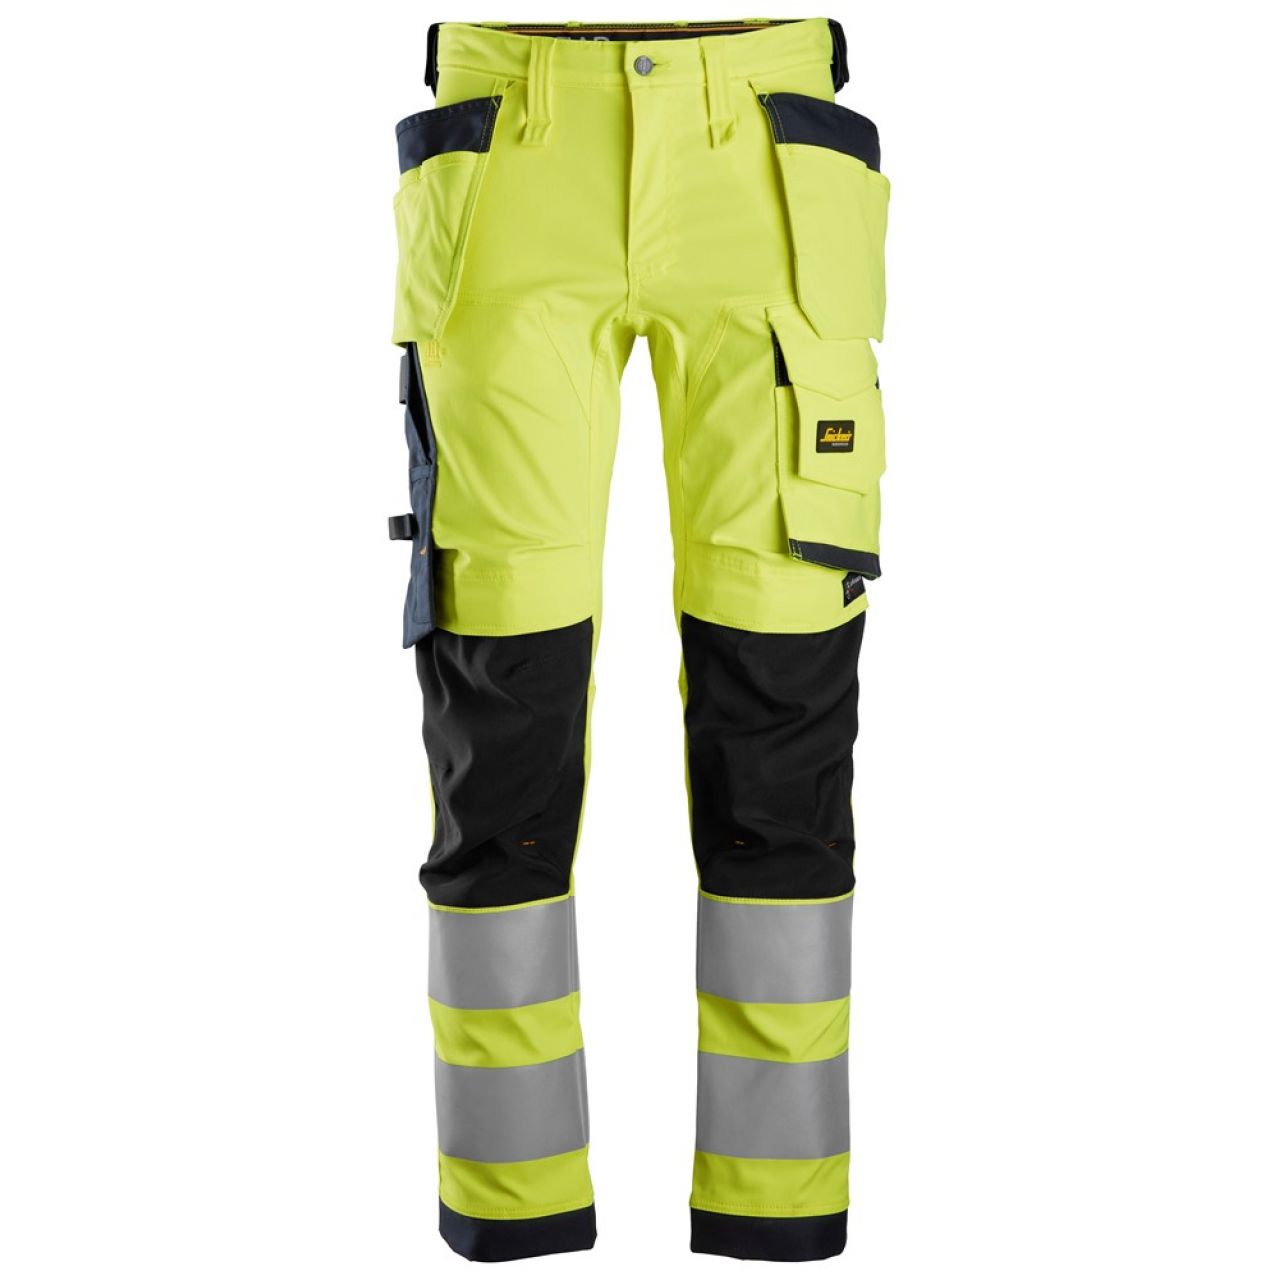 6243 Pantalones largos de trabajo elásticos de alta visibilidad clase 2 con bolsillos flotantes amarillo-azul marino talla 60